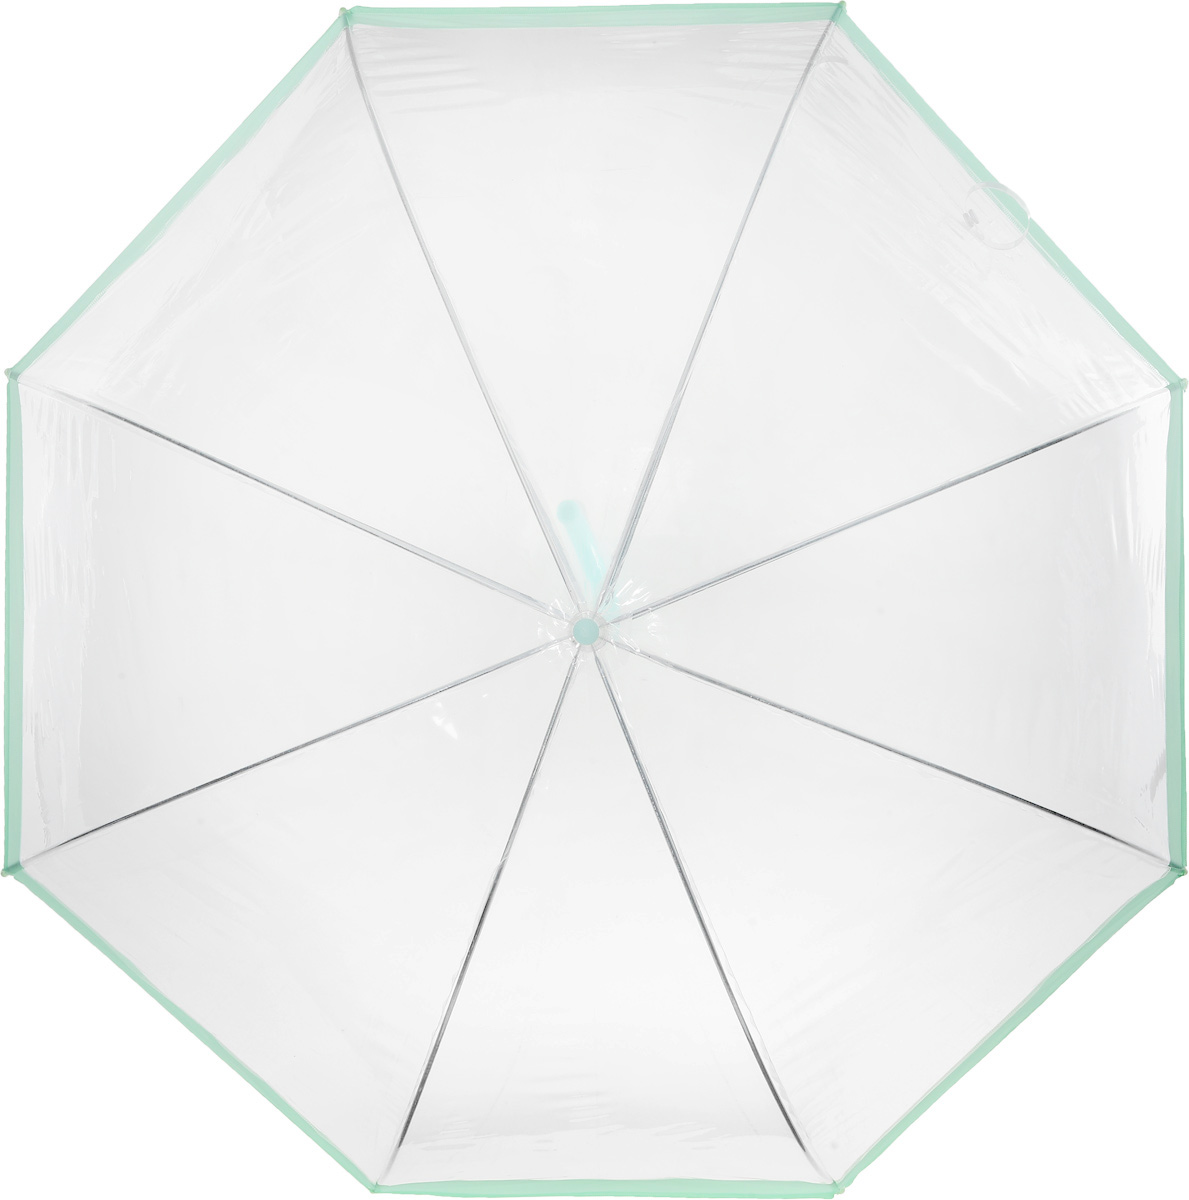 фото Зонт женский Эврика "Прозрачный купол", цвет: прозрачный, салатовый. 94863